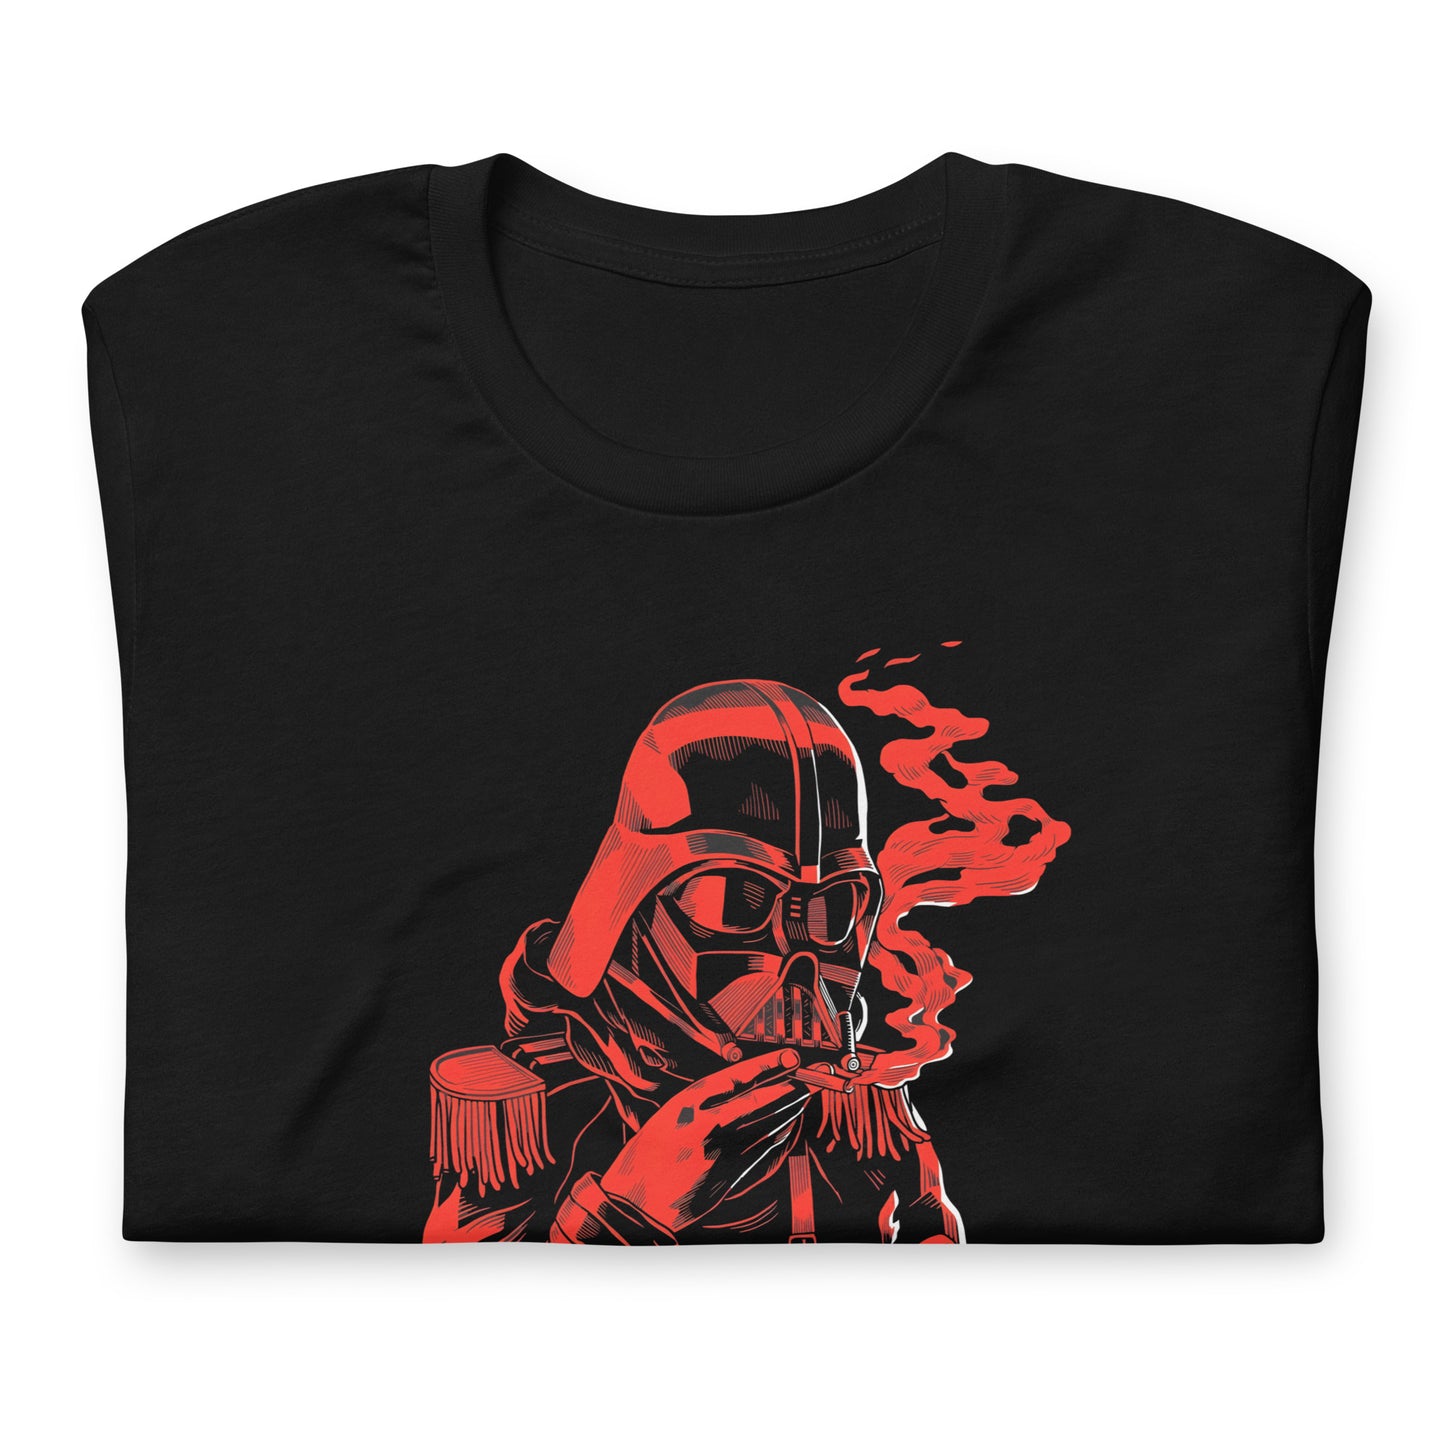 Darth Vader Smoke, Es un producto de ropa que es ideal para los fanáticos de Star Wars que deseen mostrar su amor de manera divertida y original.